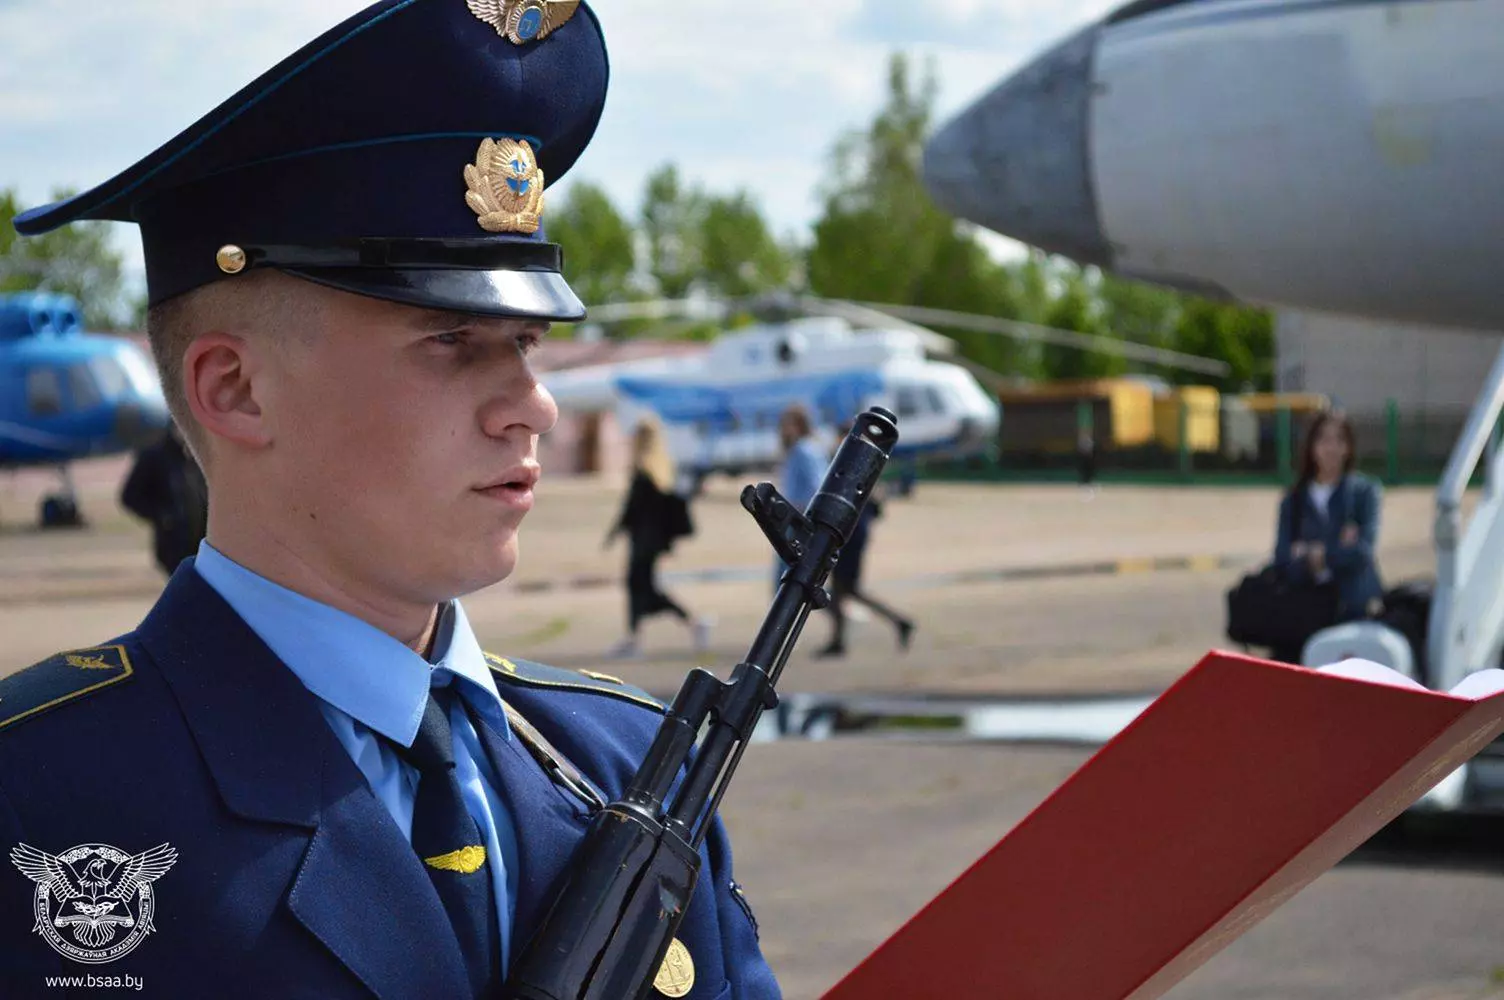 Белорусская государственная академия авиации презентация, доклад